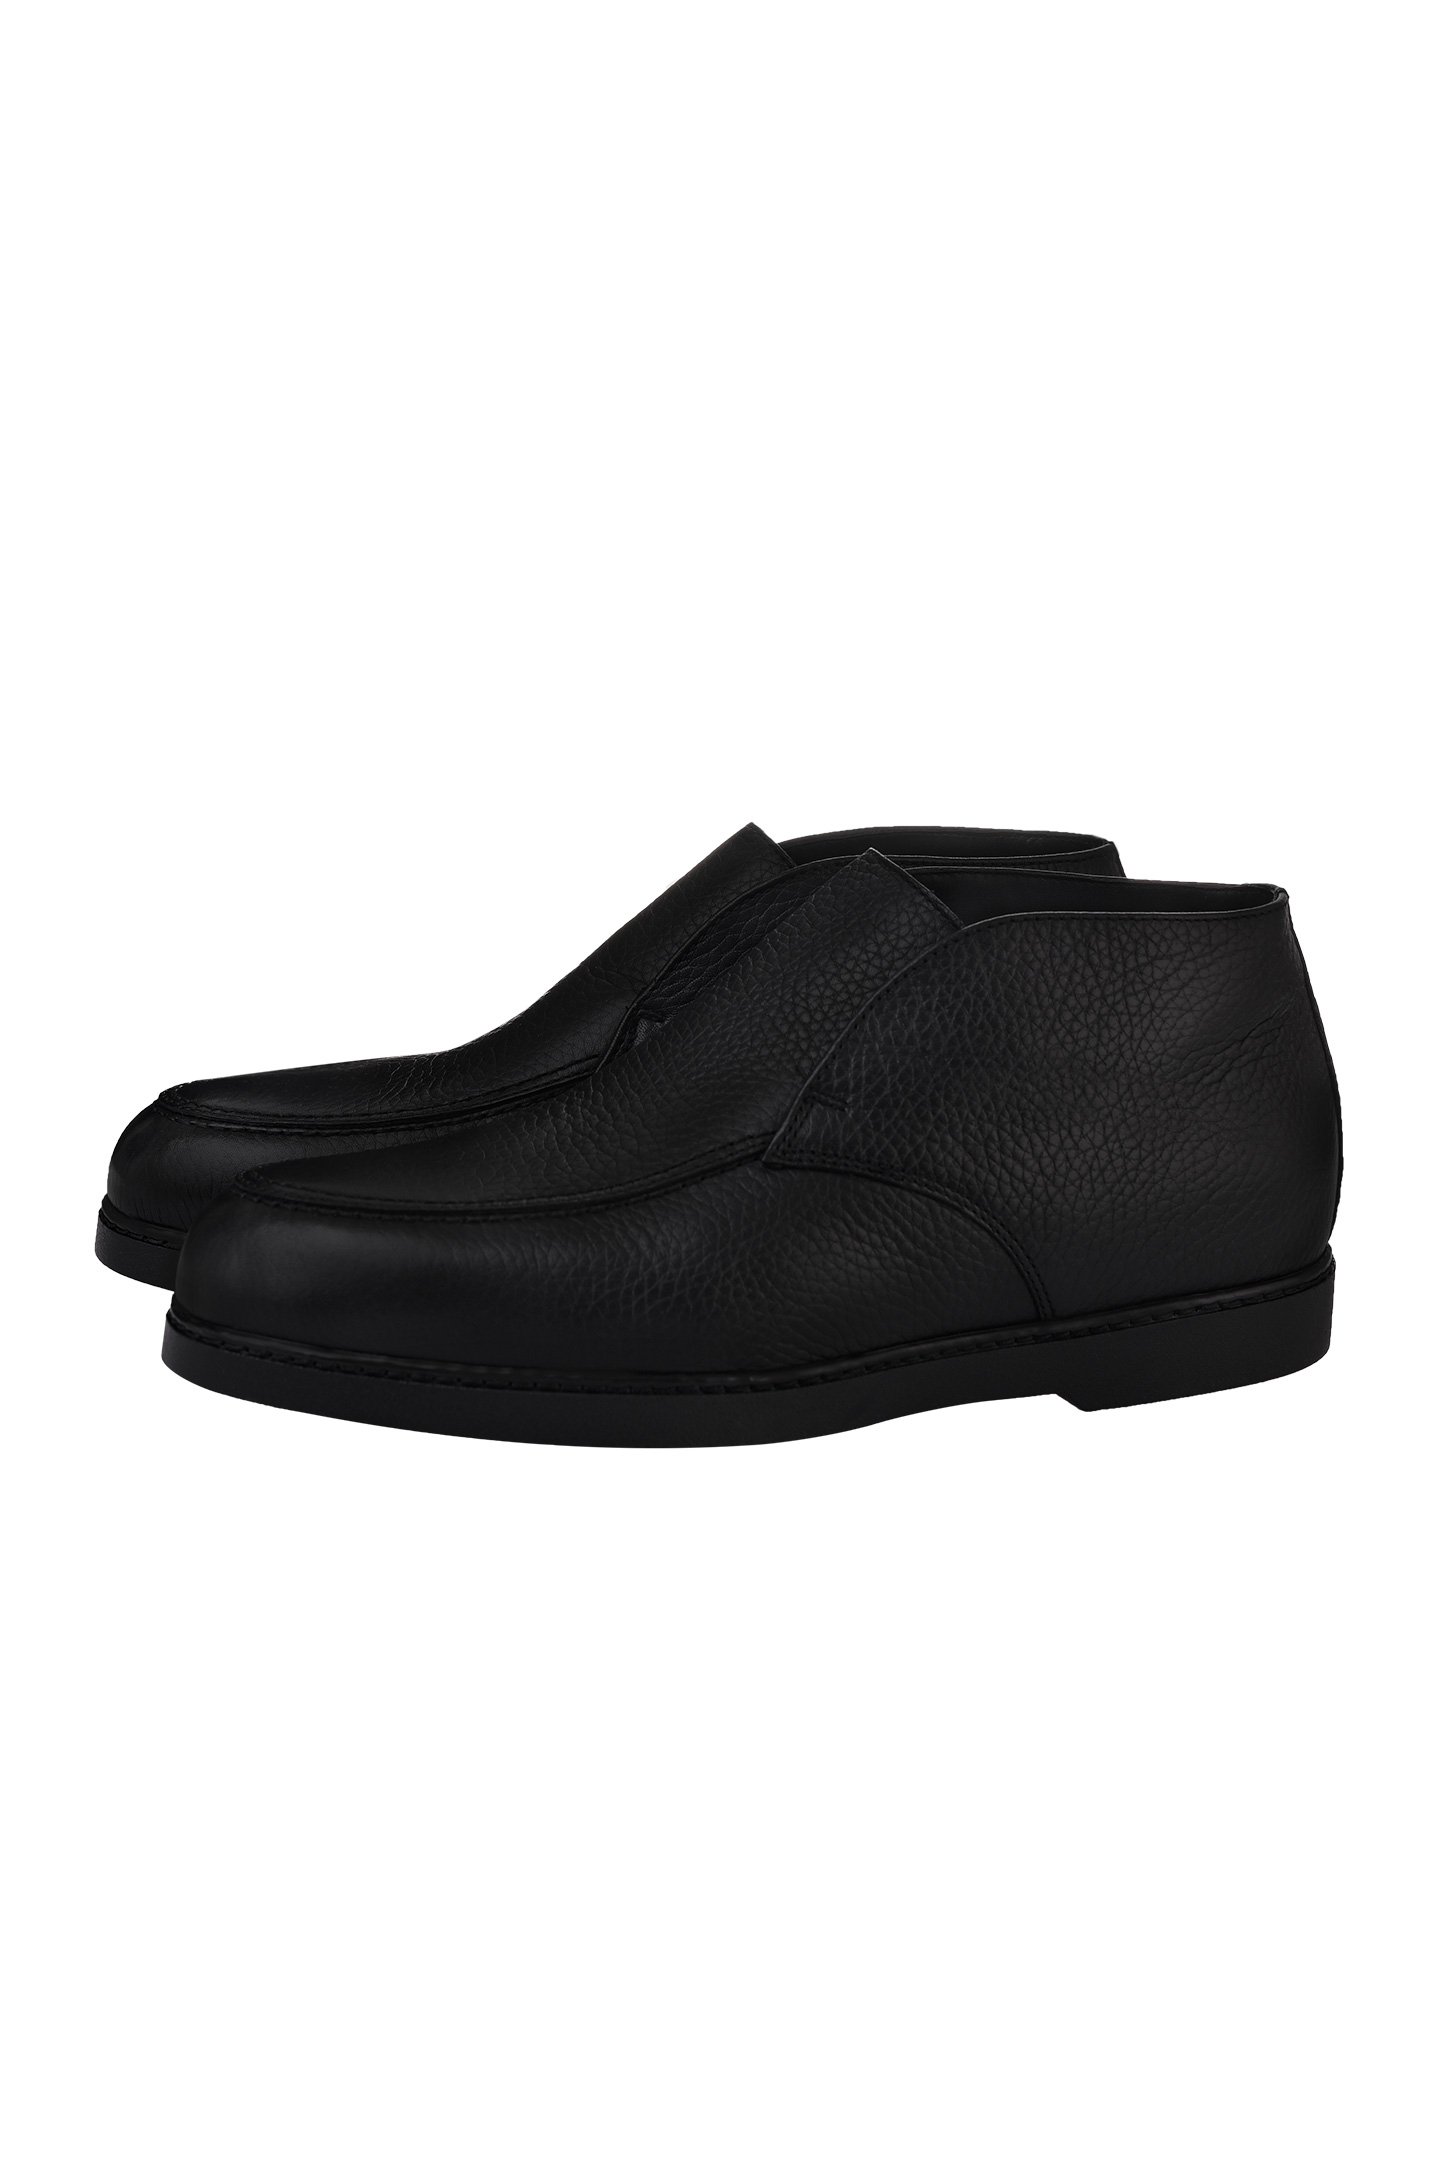 Ботинки DOUCAL'S DU2654EDO-UM019, цвет: Черный, Мужской